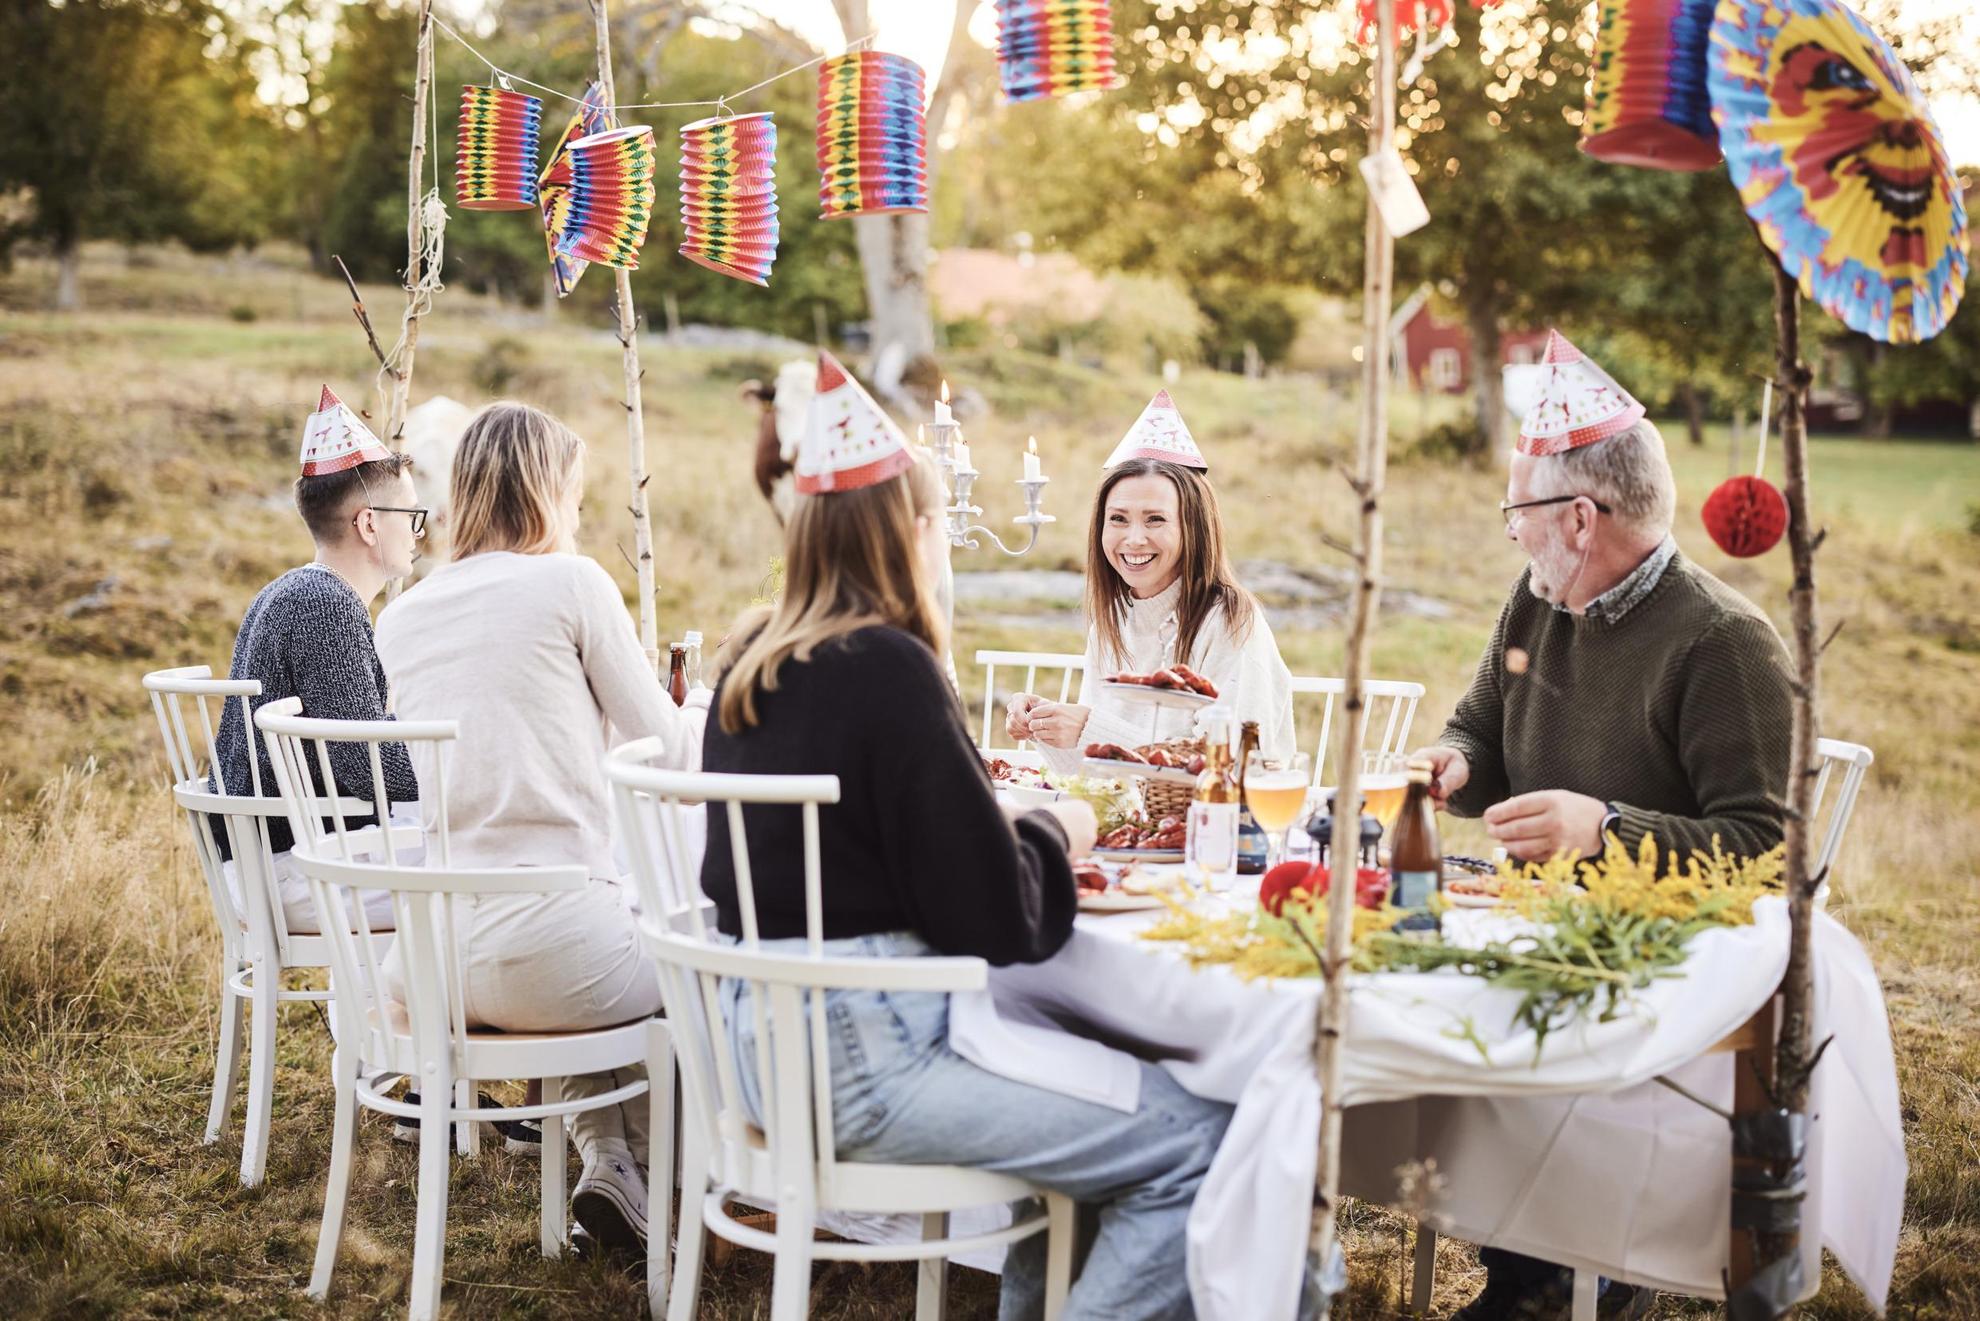 Eine Krebsparty im Freien. Mehrere Personen sitzen um einen Tisch versammelt und genießen Krebse. Sie tragen typische Partyhüte und stoßen mit Gläsern an.